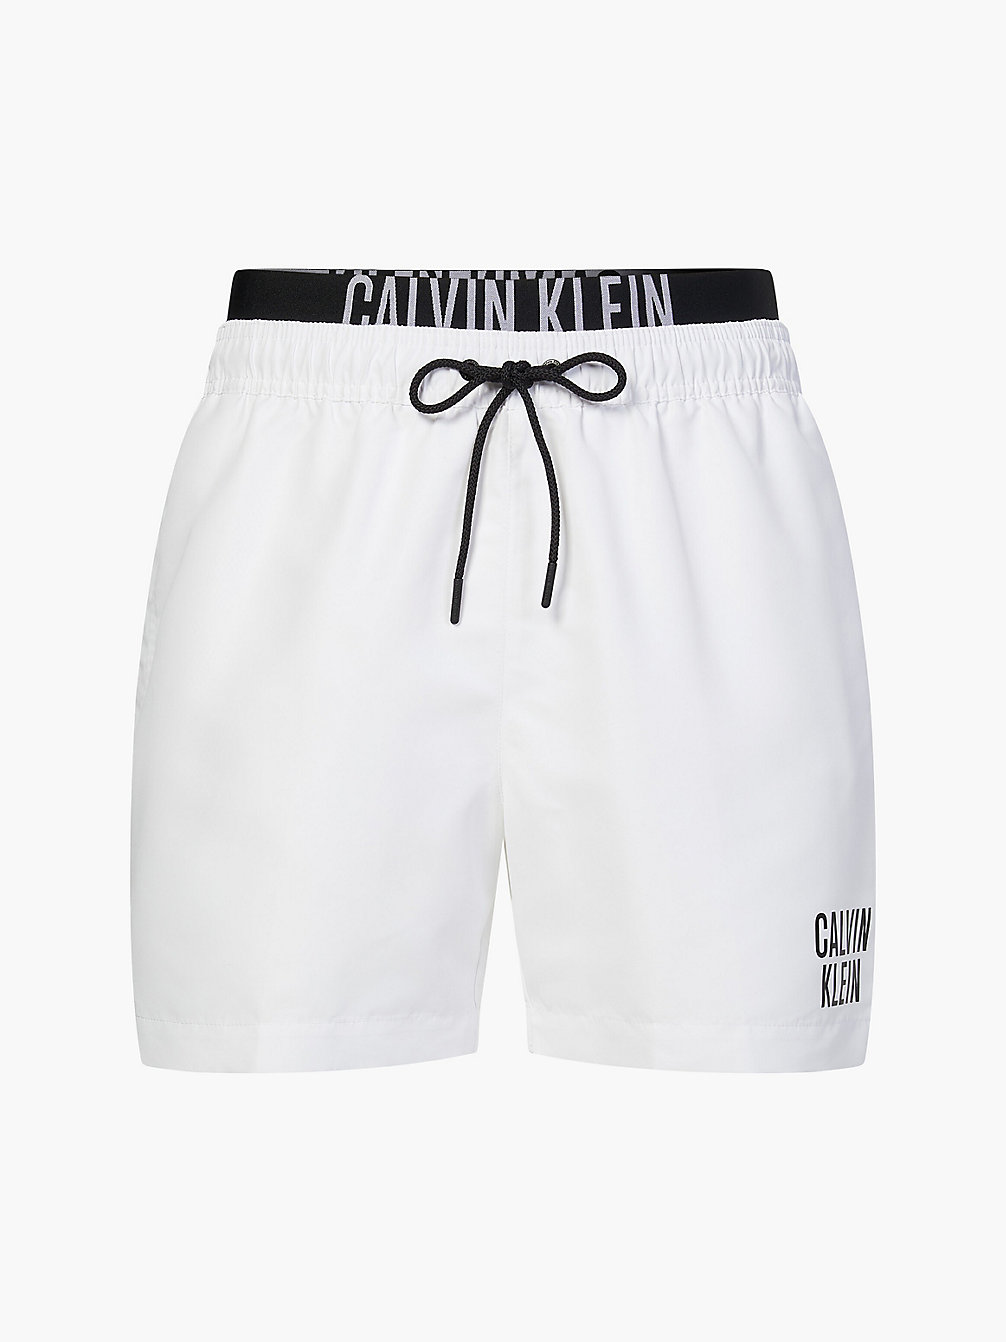 PVH CLASSIC WHITE Badeshorts Mit Doppeltem Bund - Intense Power undefined Herren Calvin Klein